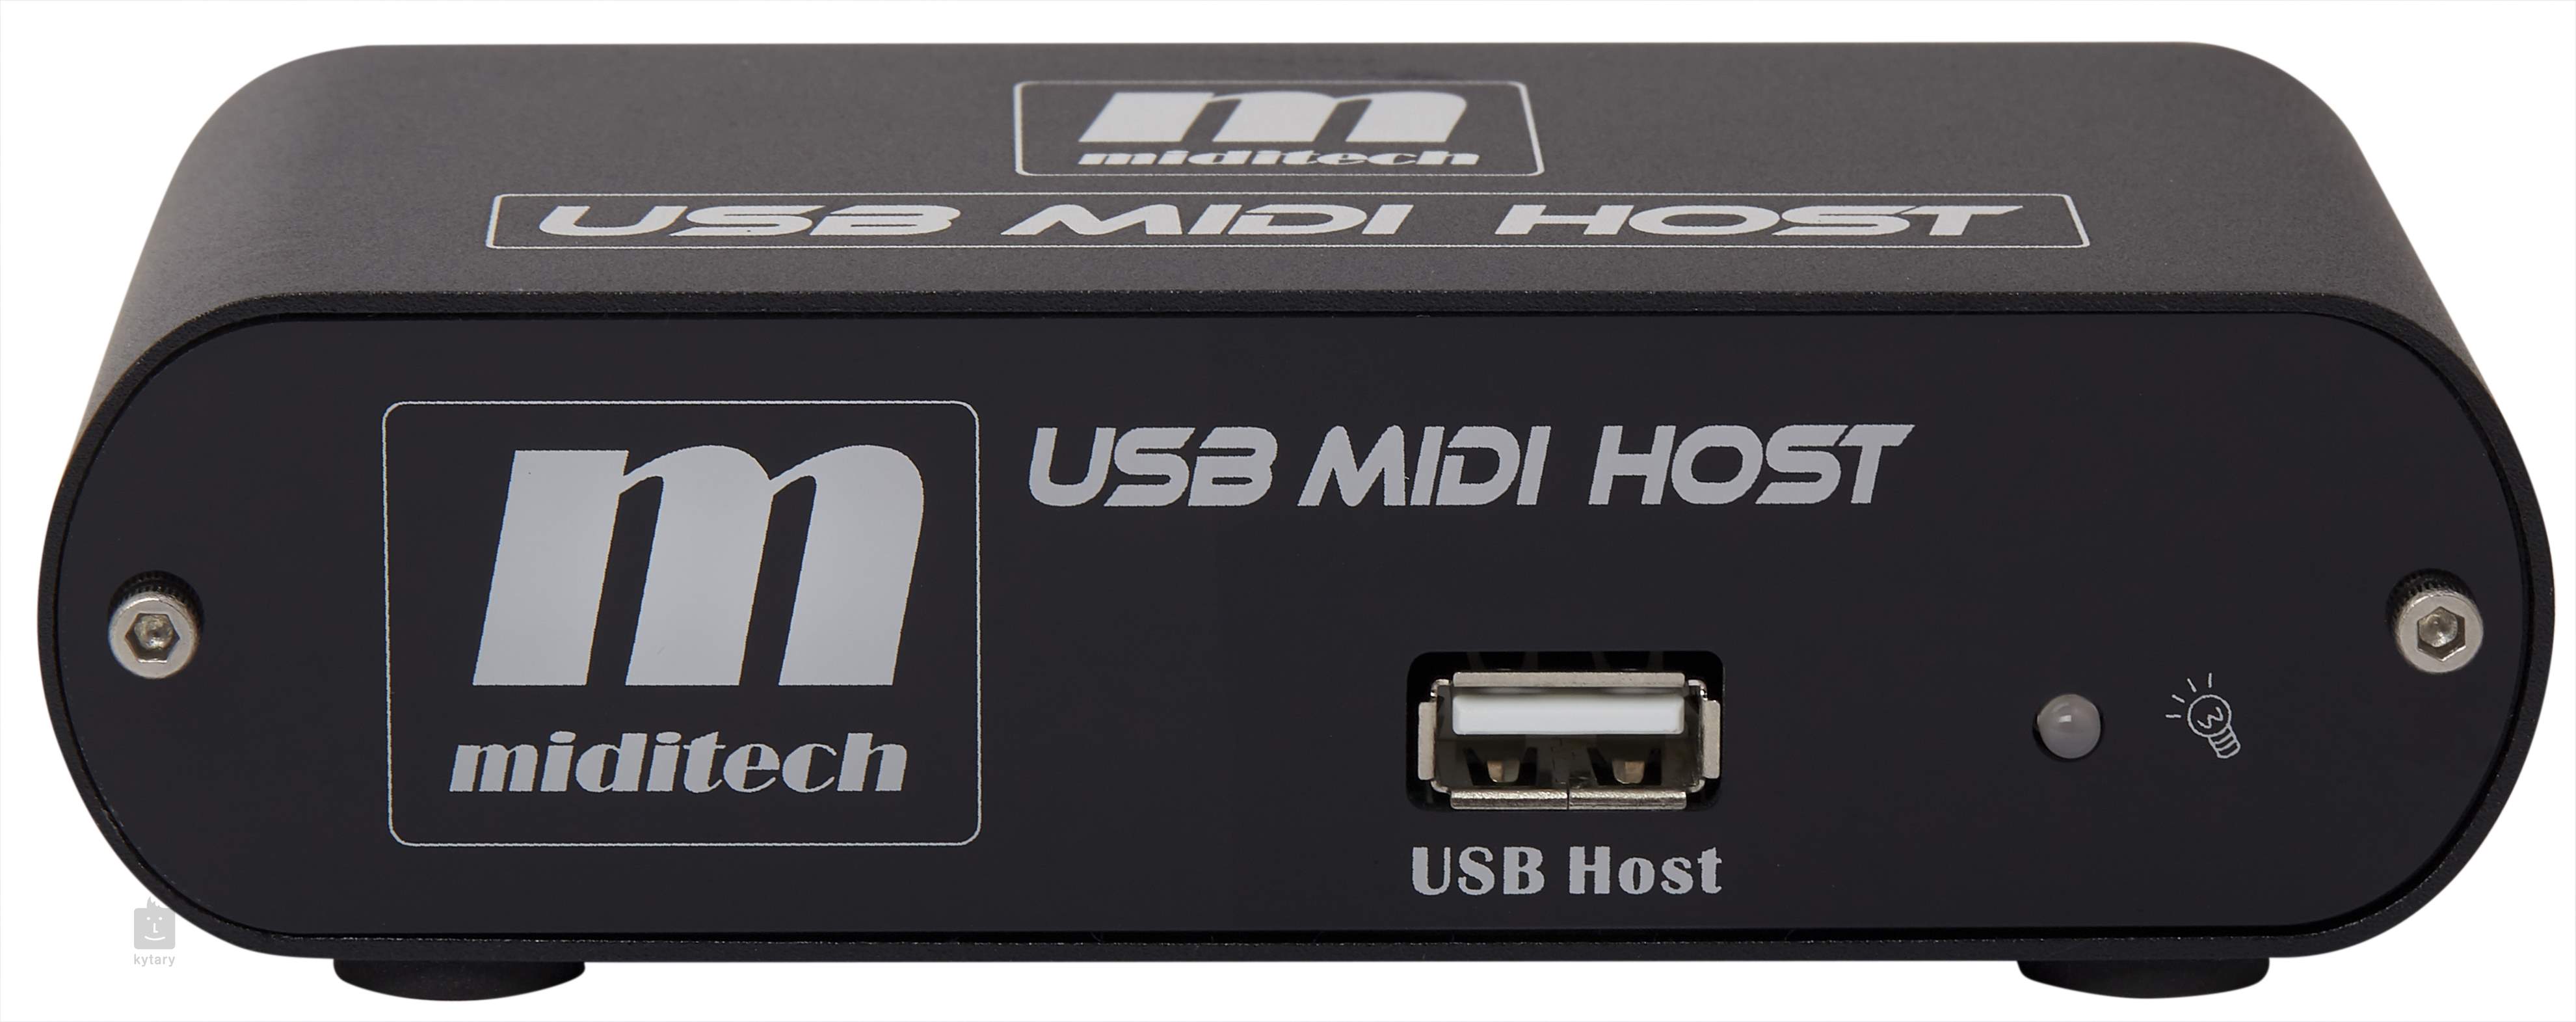 USB MIDI HOST miditeck